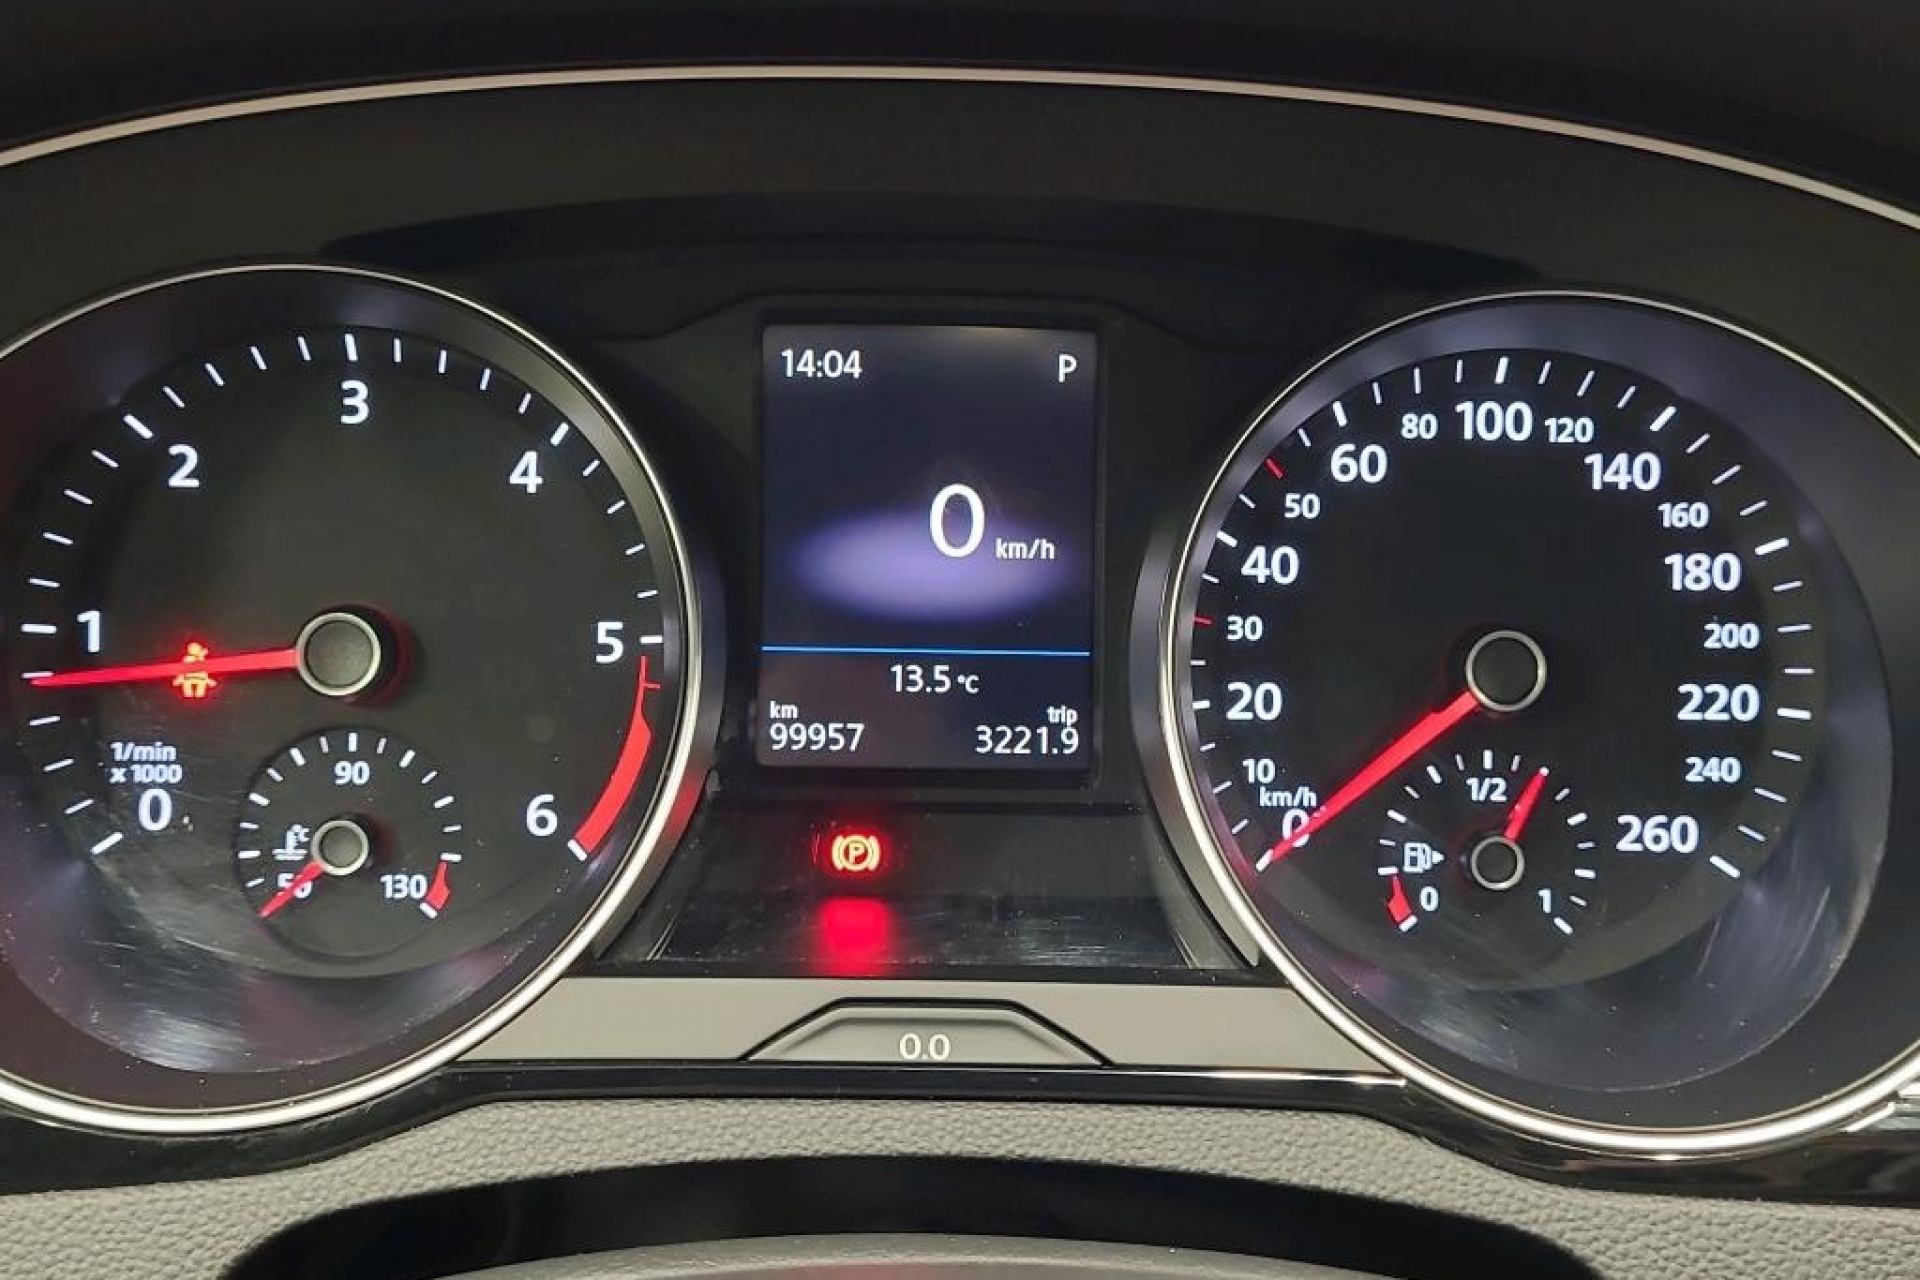 Volkswagen Passat 1.6 CR TDI DSG7 Business Line MATRIX LED IQ.LIGHT Navigacija  Acc-System Kamera 360° Park Assist Max-Voll FACELIFT